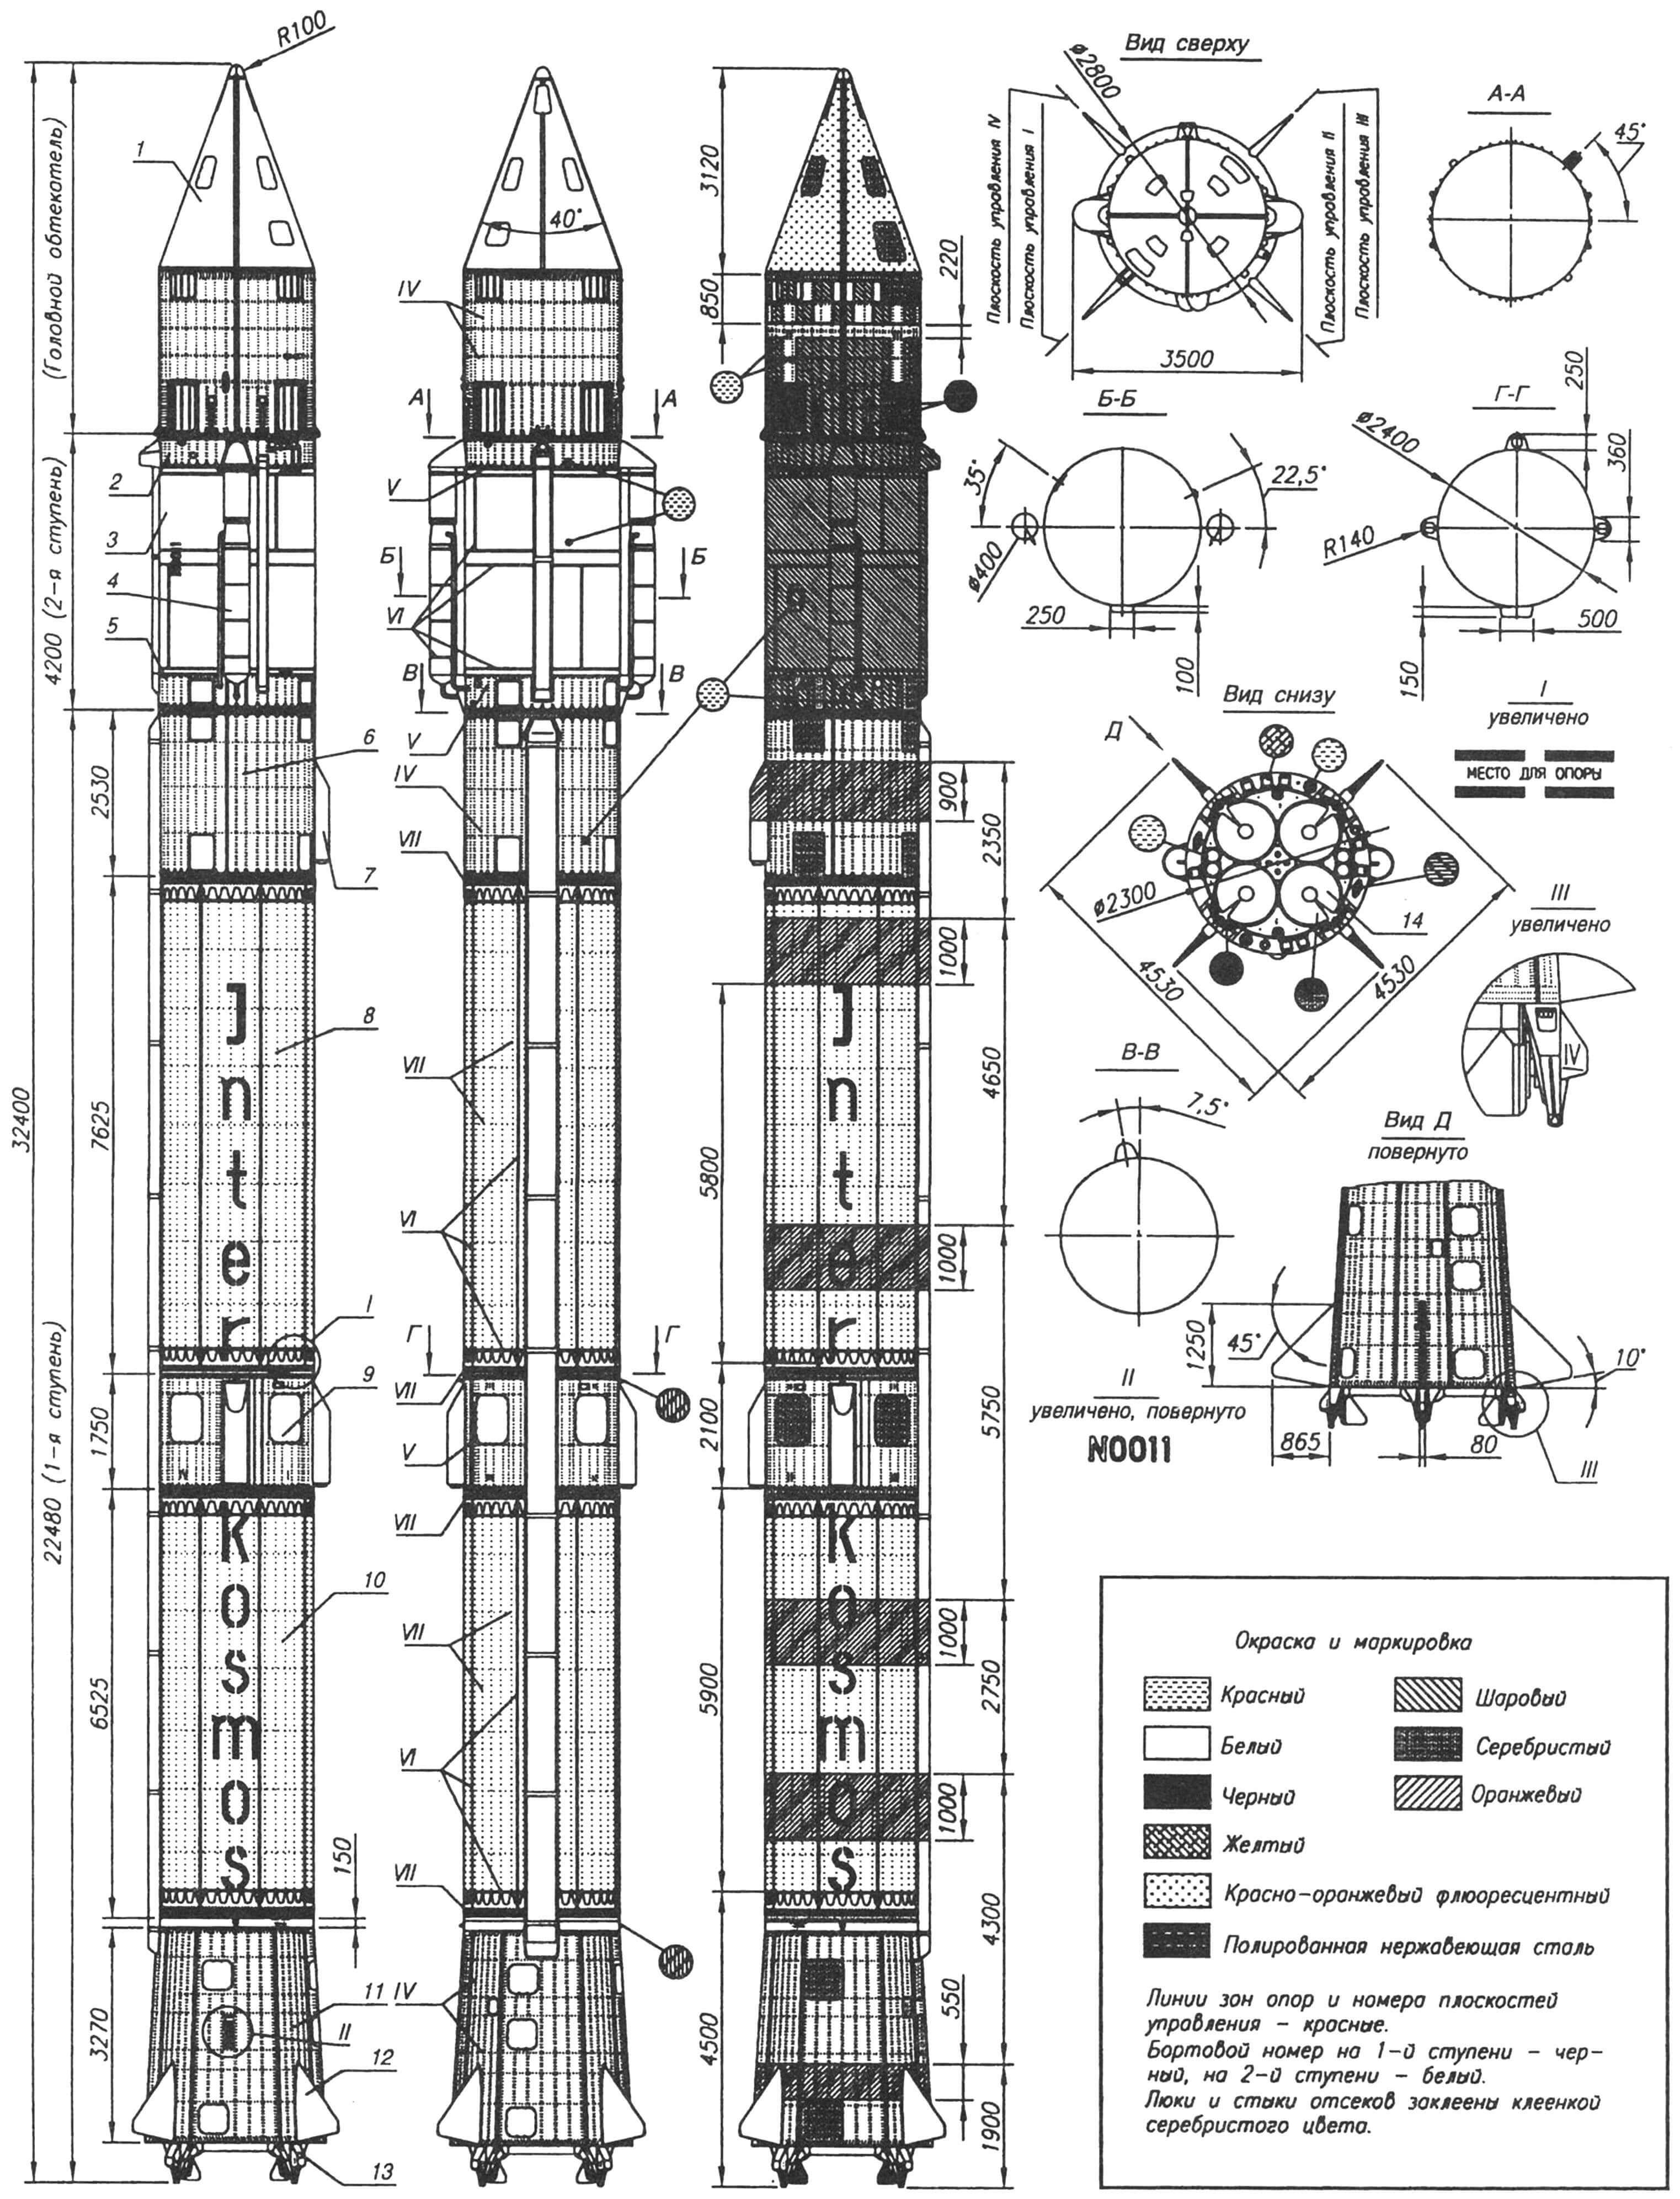 Ракета-носитель "Космос-3М"